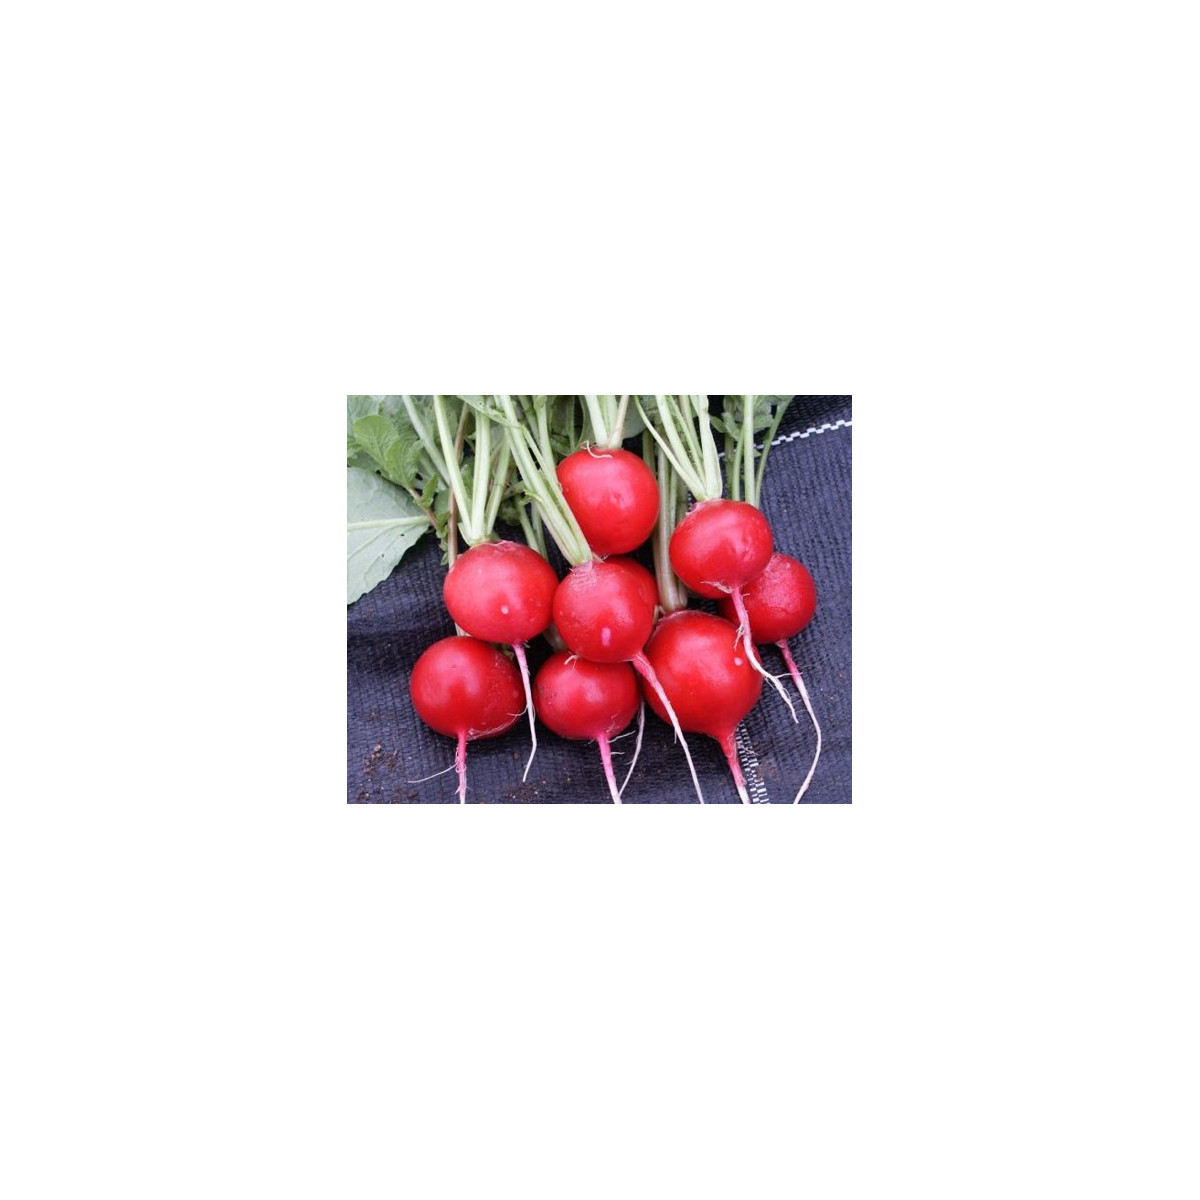 Ředkvička červená kulatá - Carnita - prodej semen ředkvičky - 